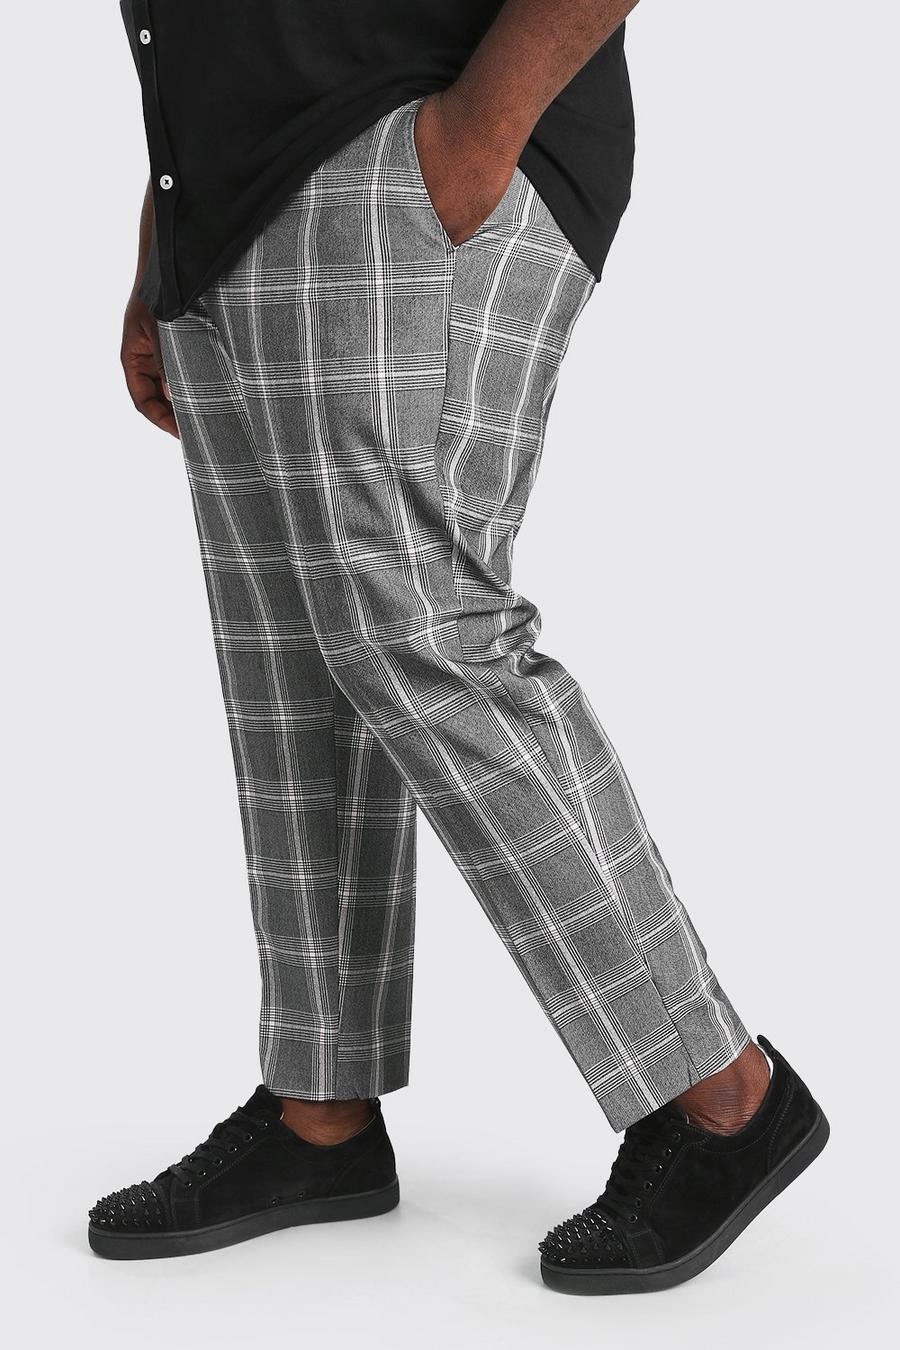 אפור מכנסי קרופ בגזרה צרה עם הדפס משבצות ושרשרת למידות גדולות image number 1